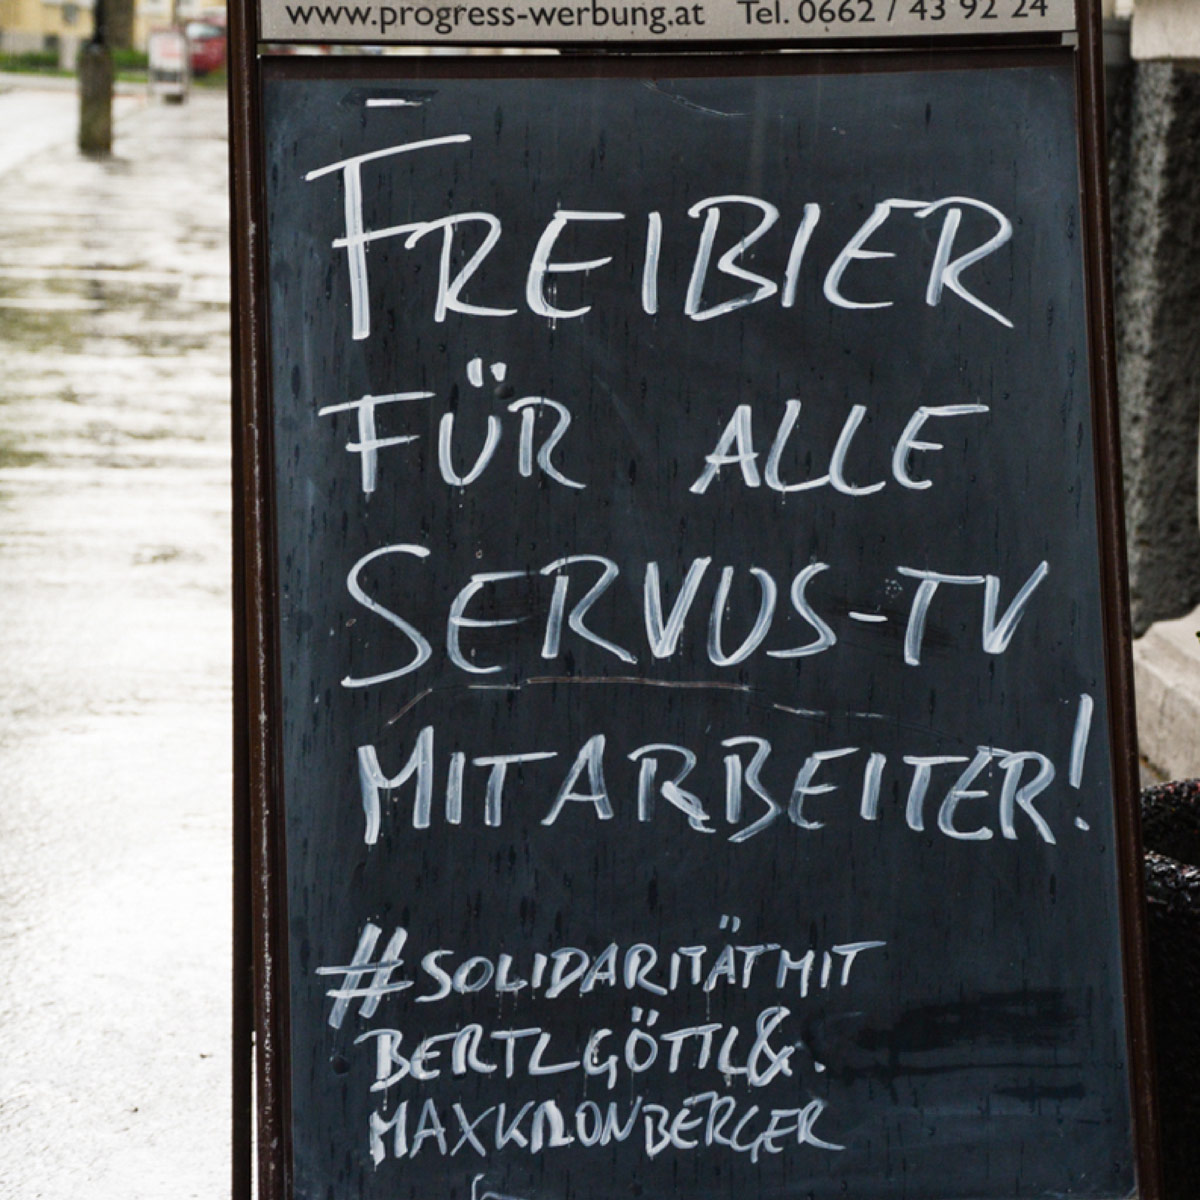 Freibier Für Alle Servus-TV Mitarbeiter! #solidarität Mit Bertl Göttl Und Max Kronberger